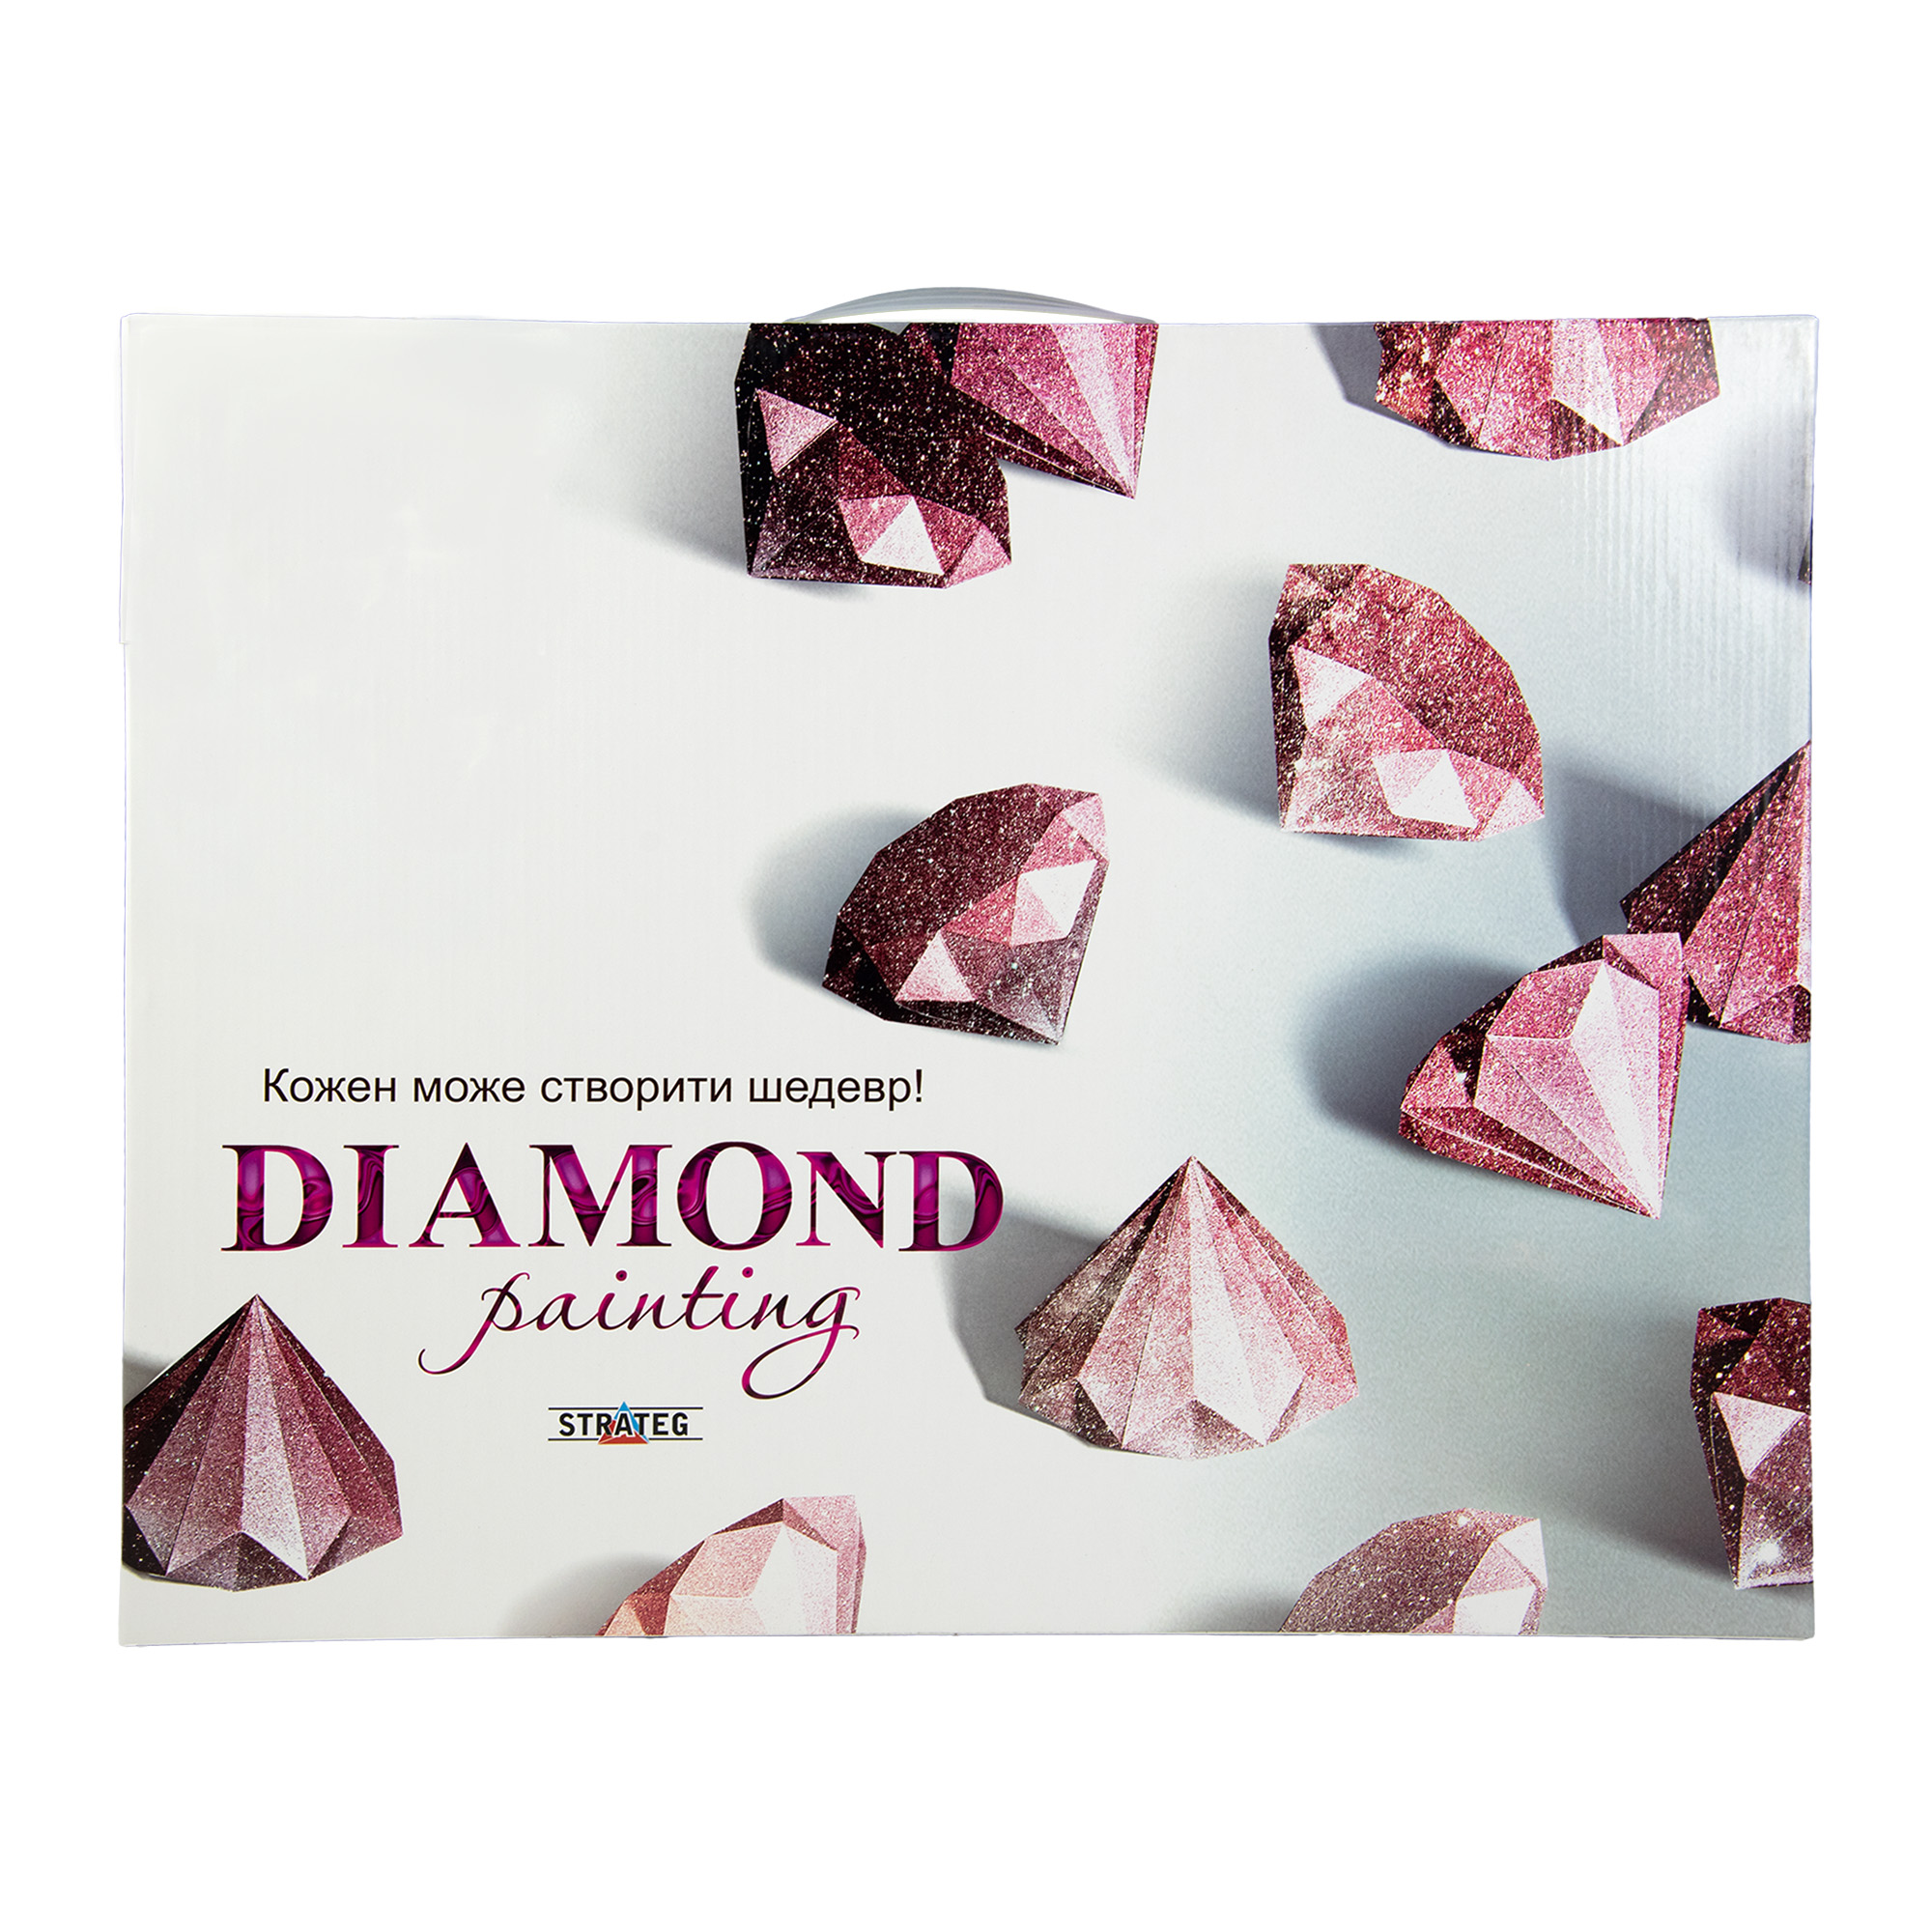 Diamantmosaik Strateg PREMIUM Frühstück für einen Liebhaber, Größe 40x50 cm (SK85994)